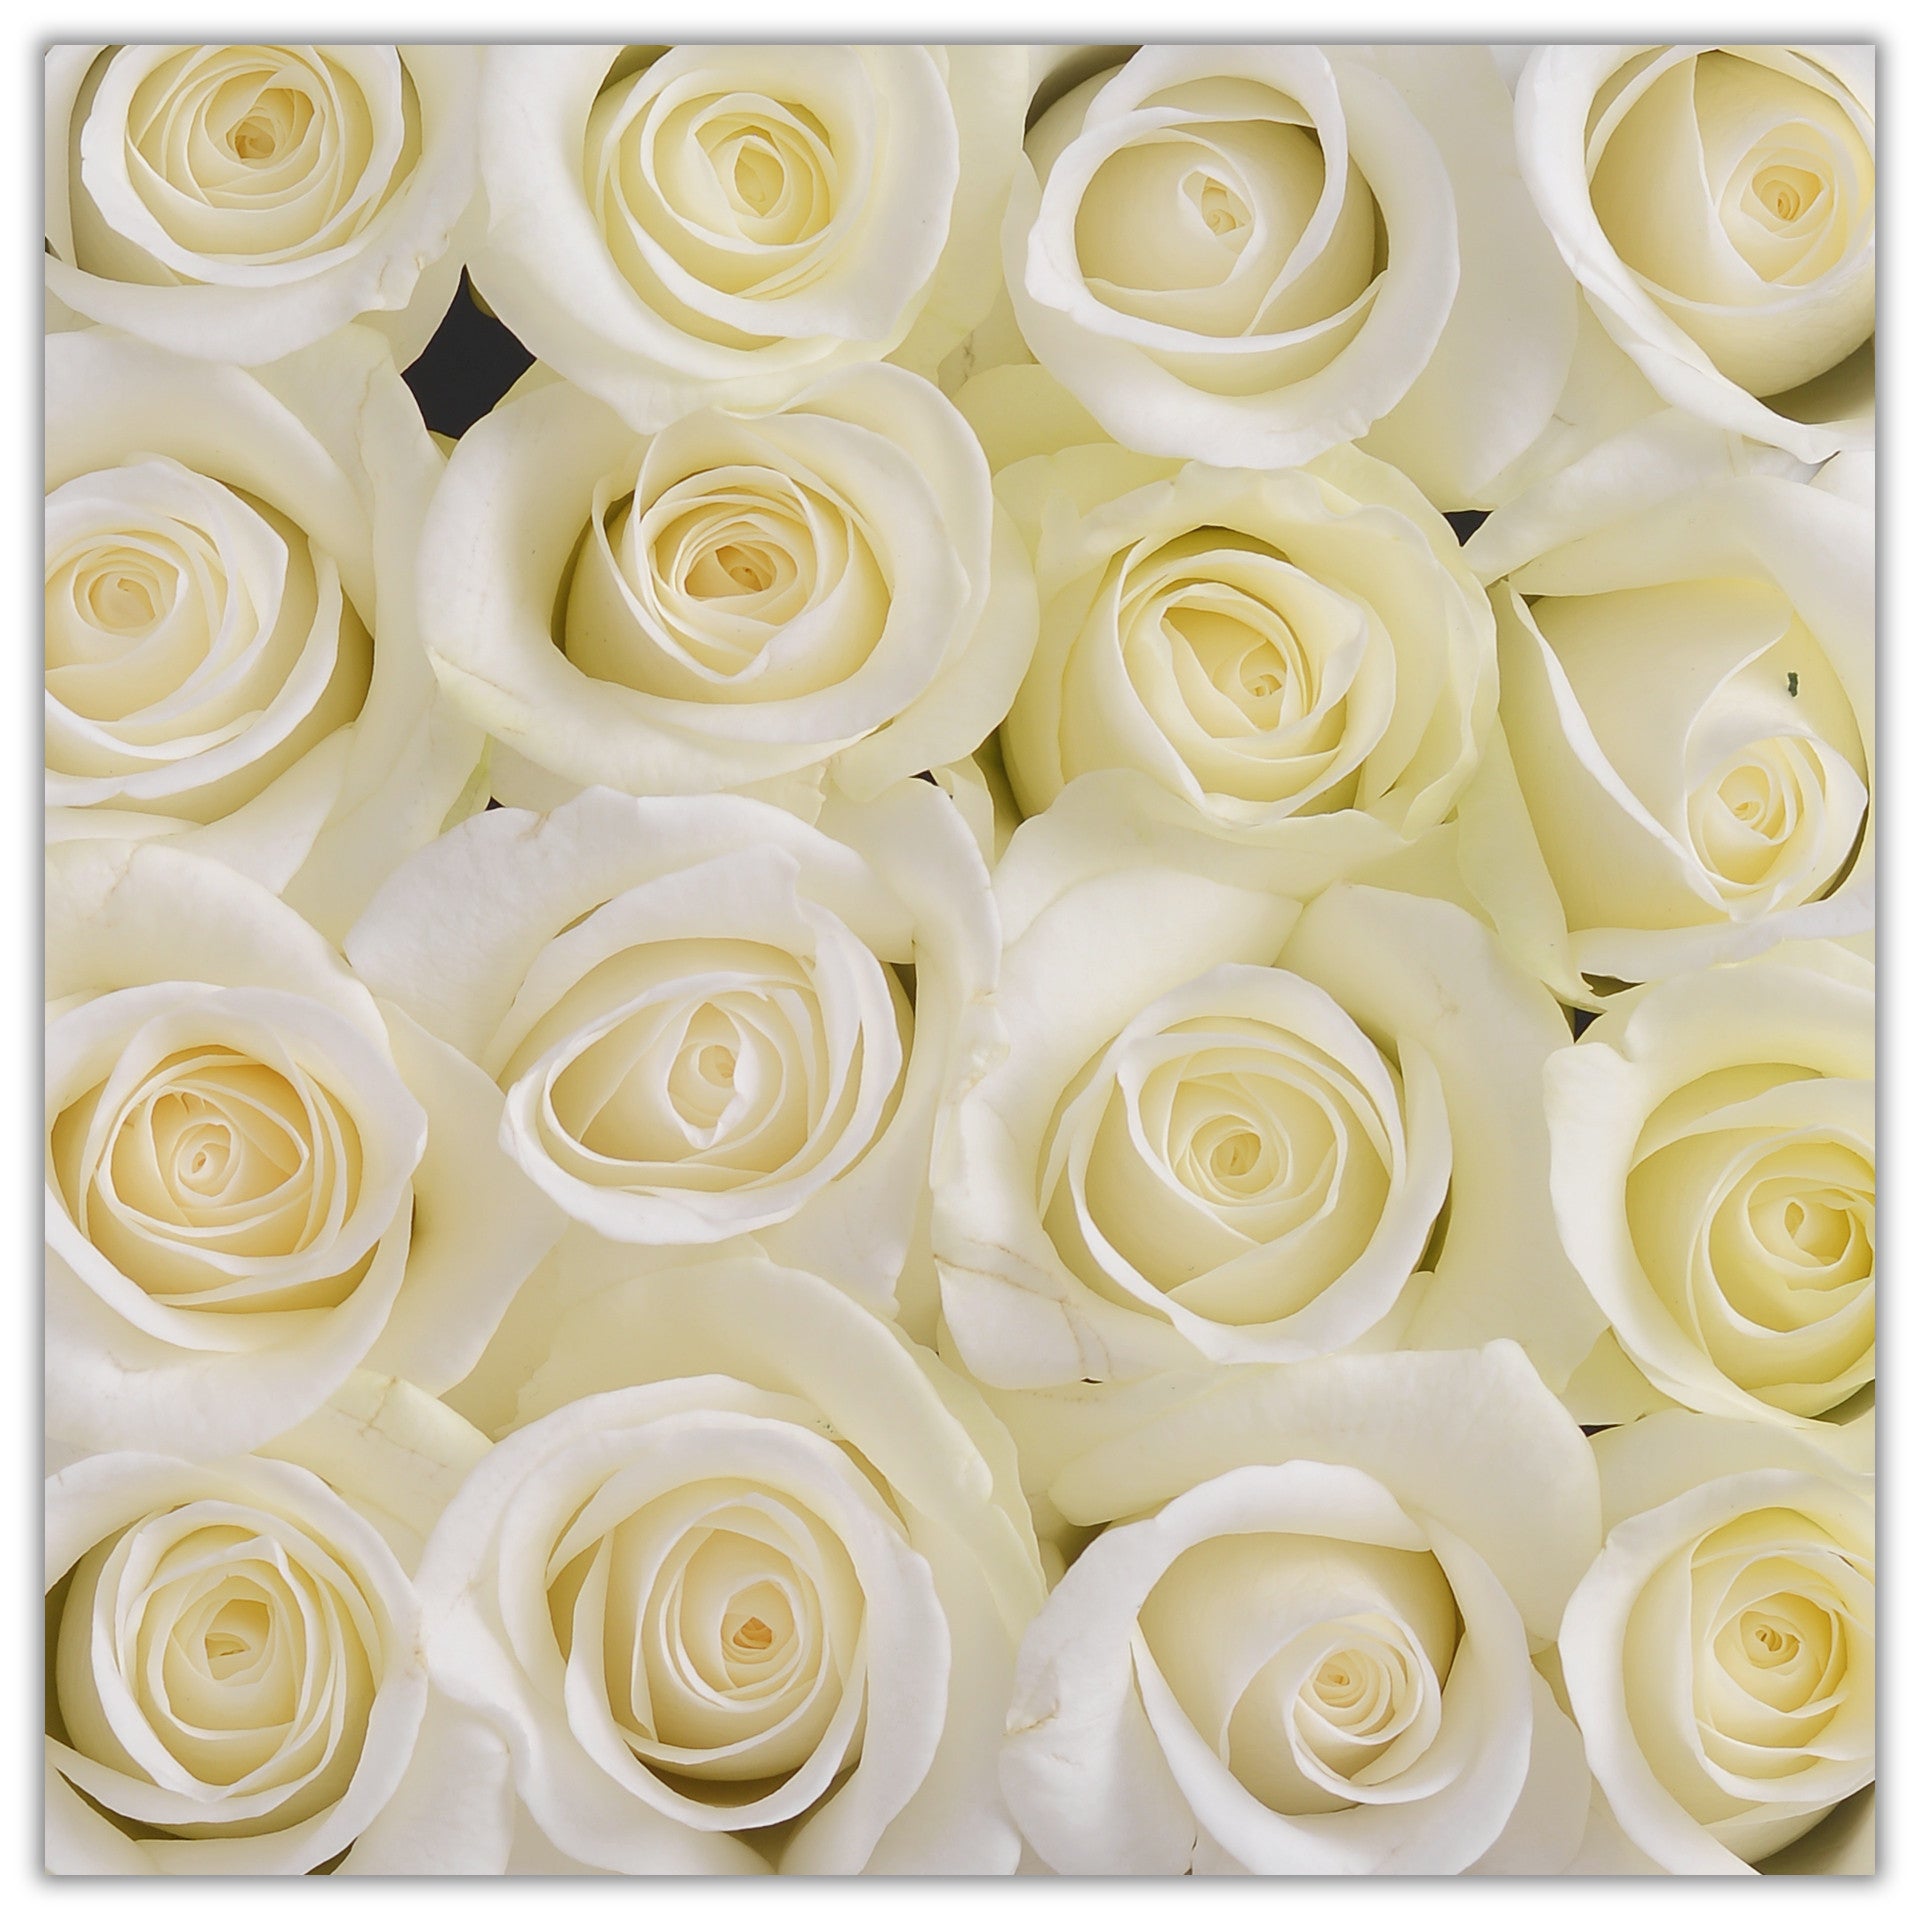 Cube - White Roses - White Box - The Million Roses Budapest